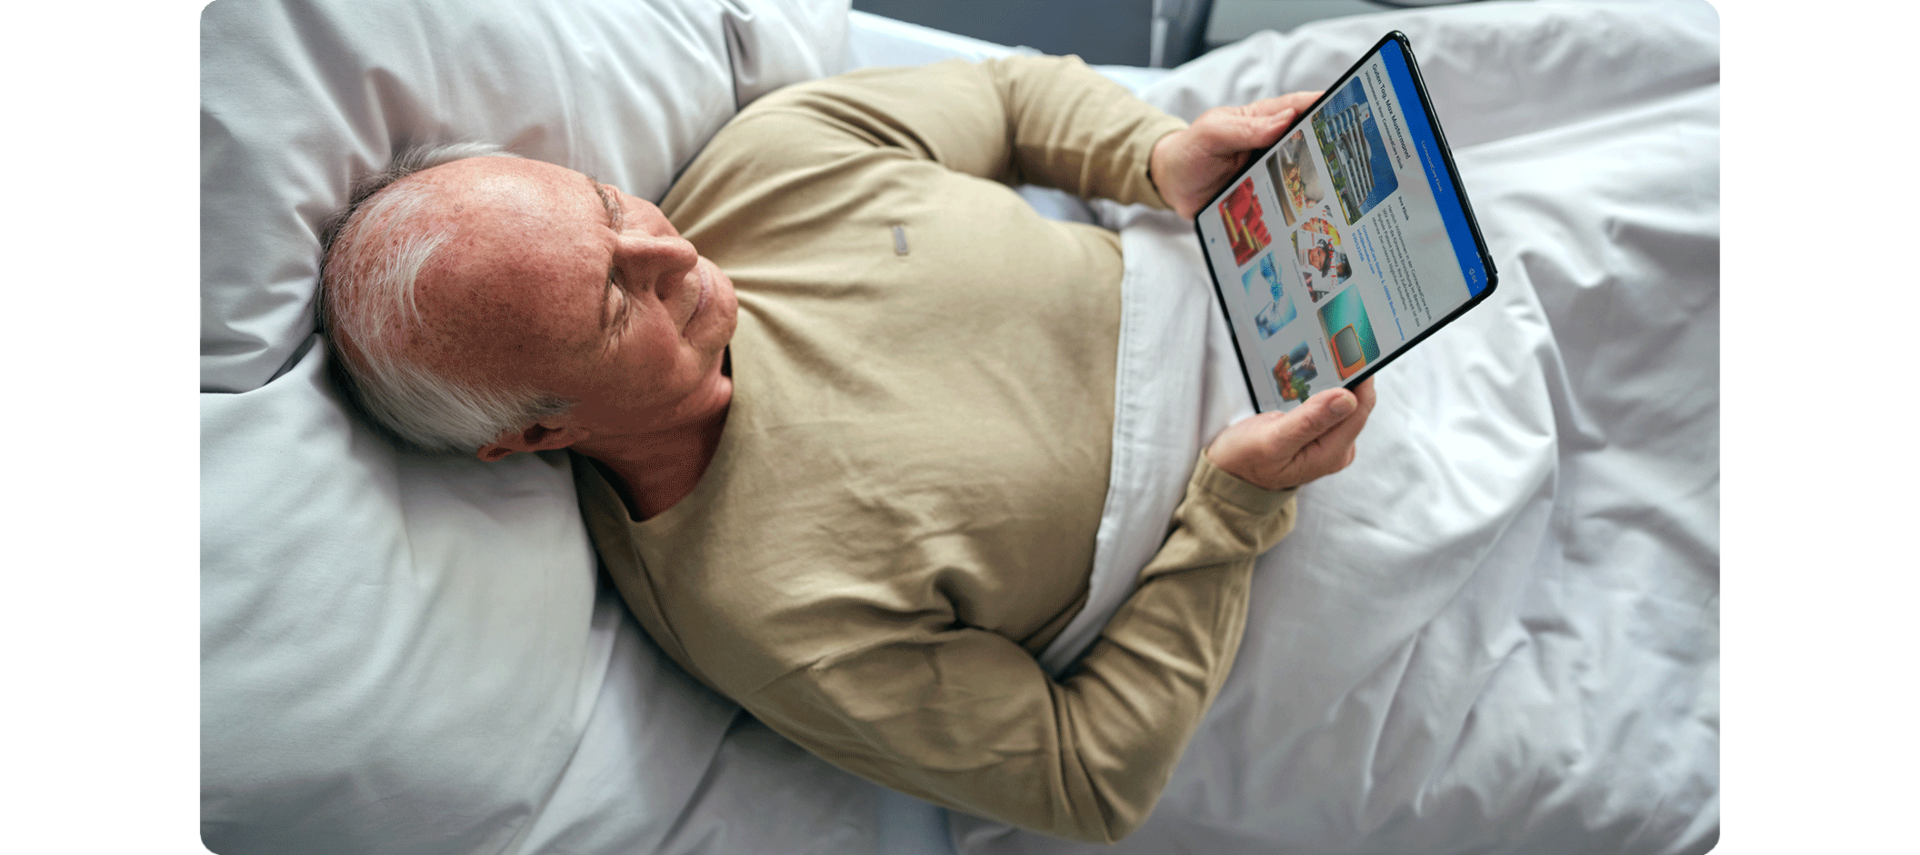 Patientenentertainment: Alterer Patient liegt im Krankenhausbett und liest auf dem iPad